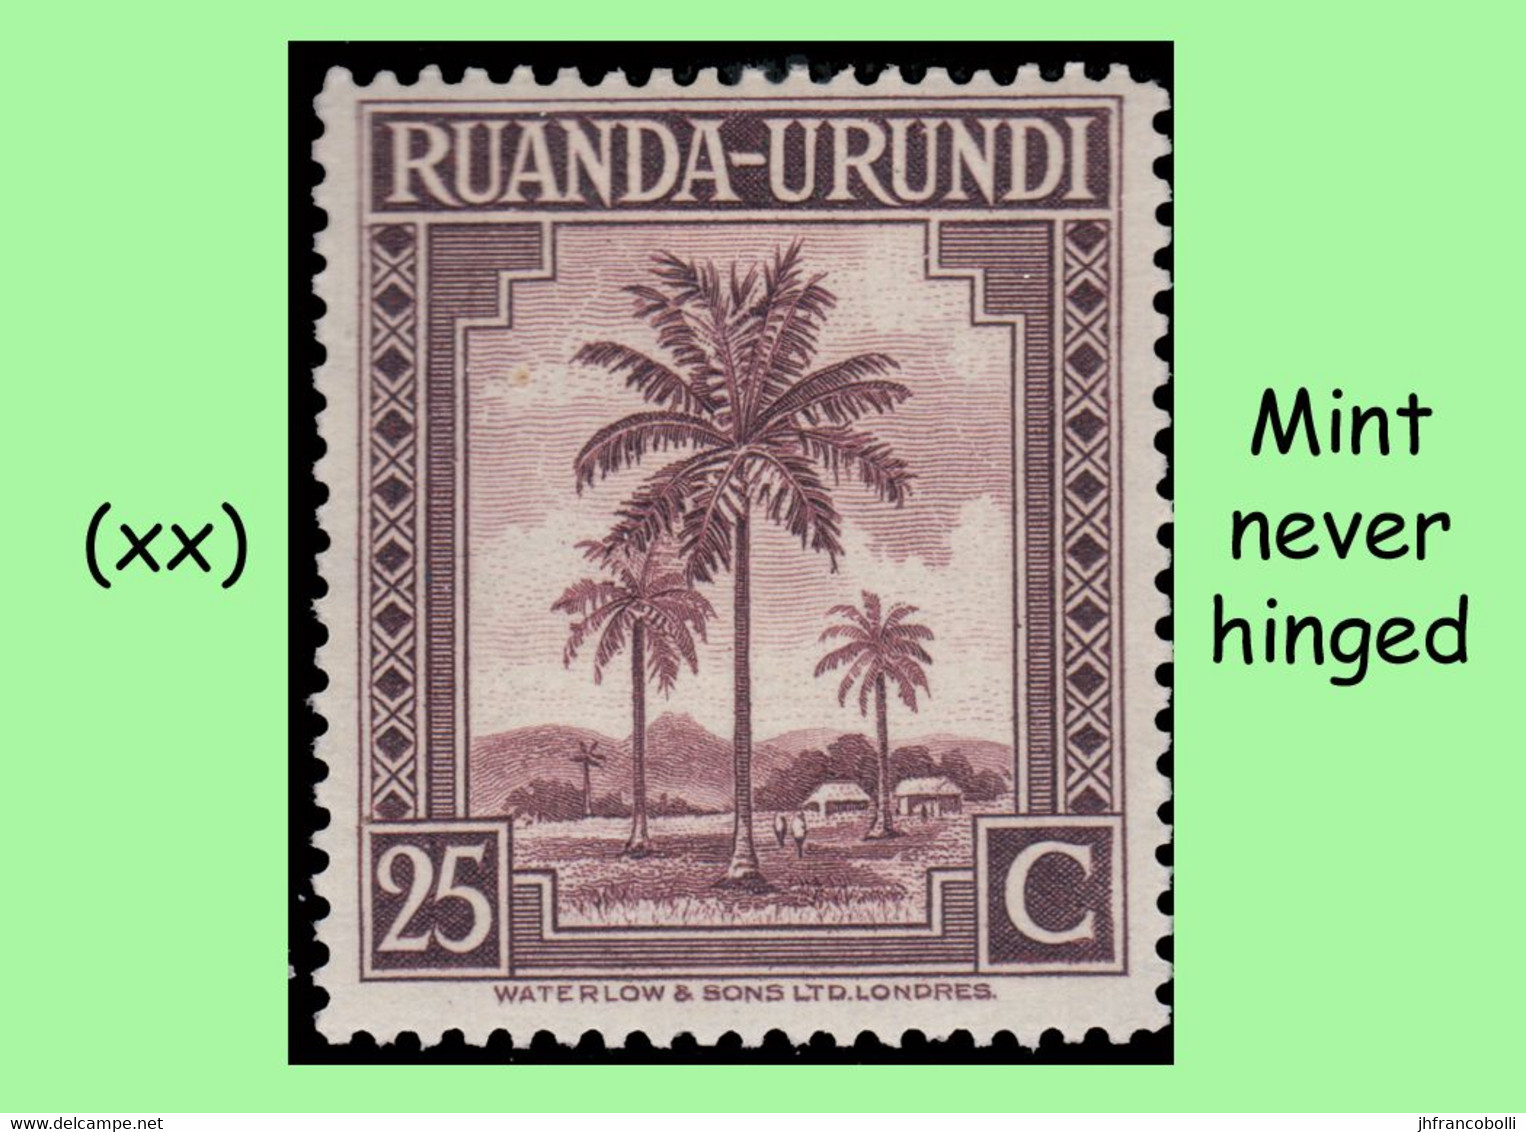 1942 ** RUANDA-URUNDI RU 126/146 MNH PALM SET SELECTION ( x 21 stamps )